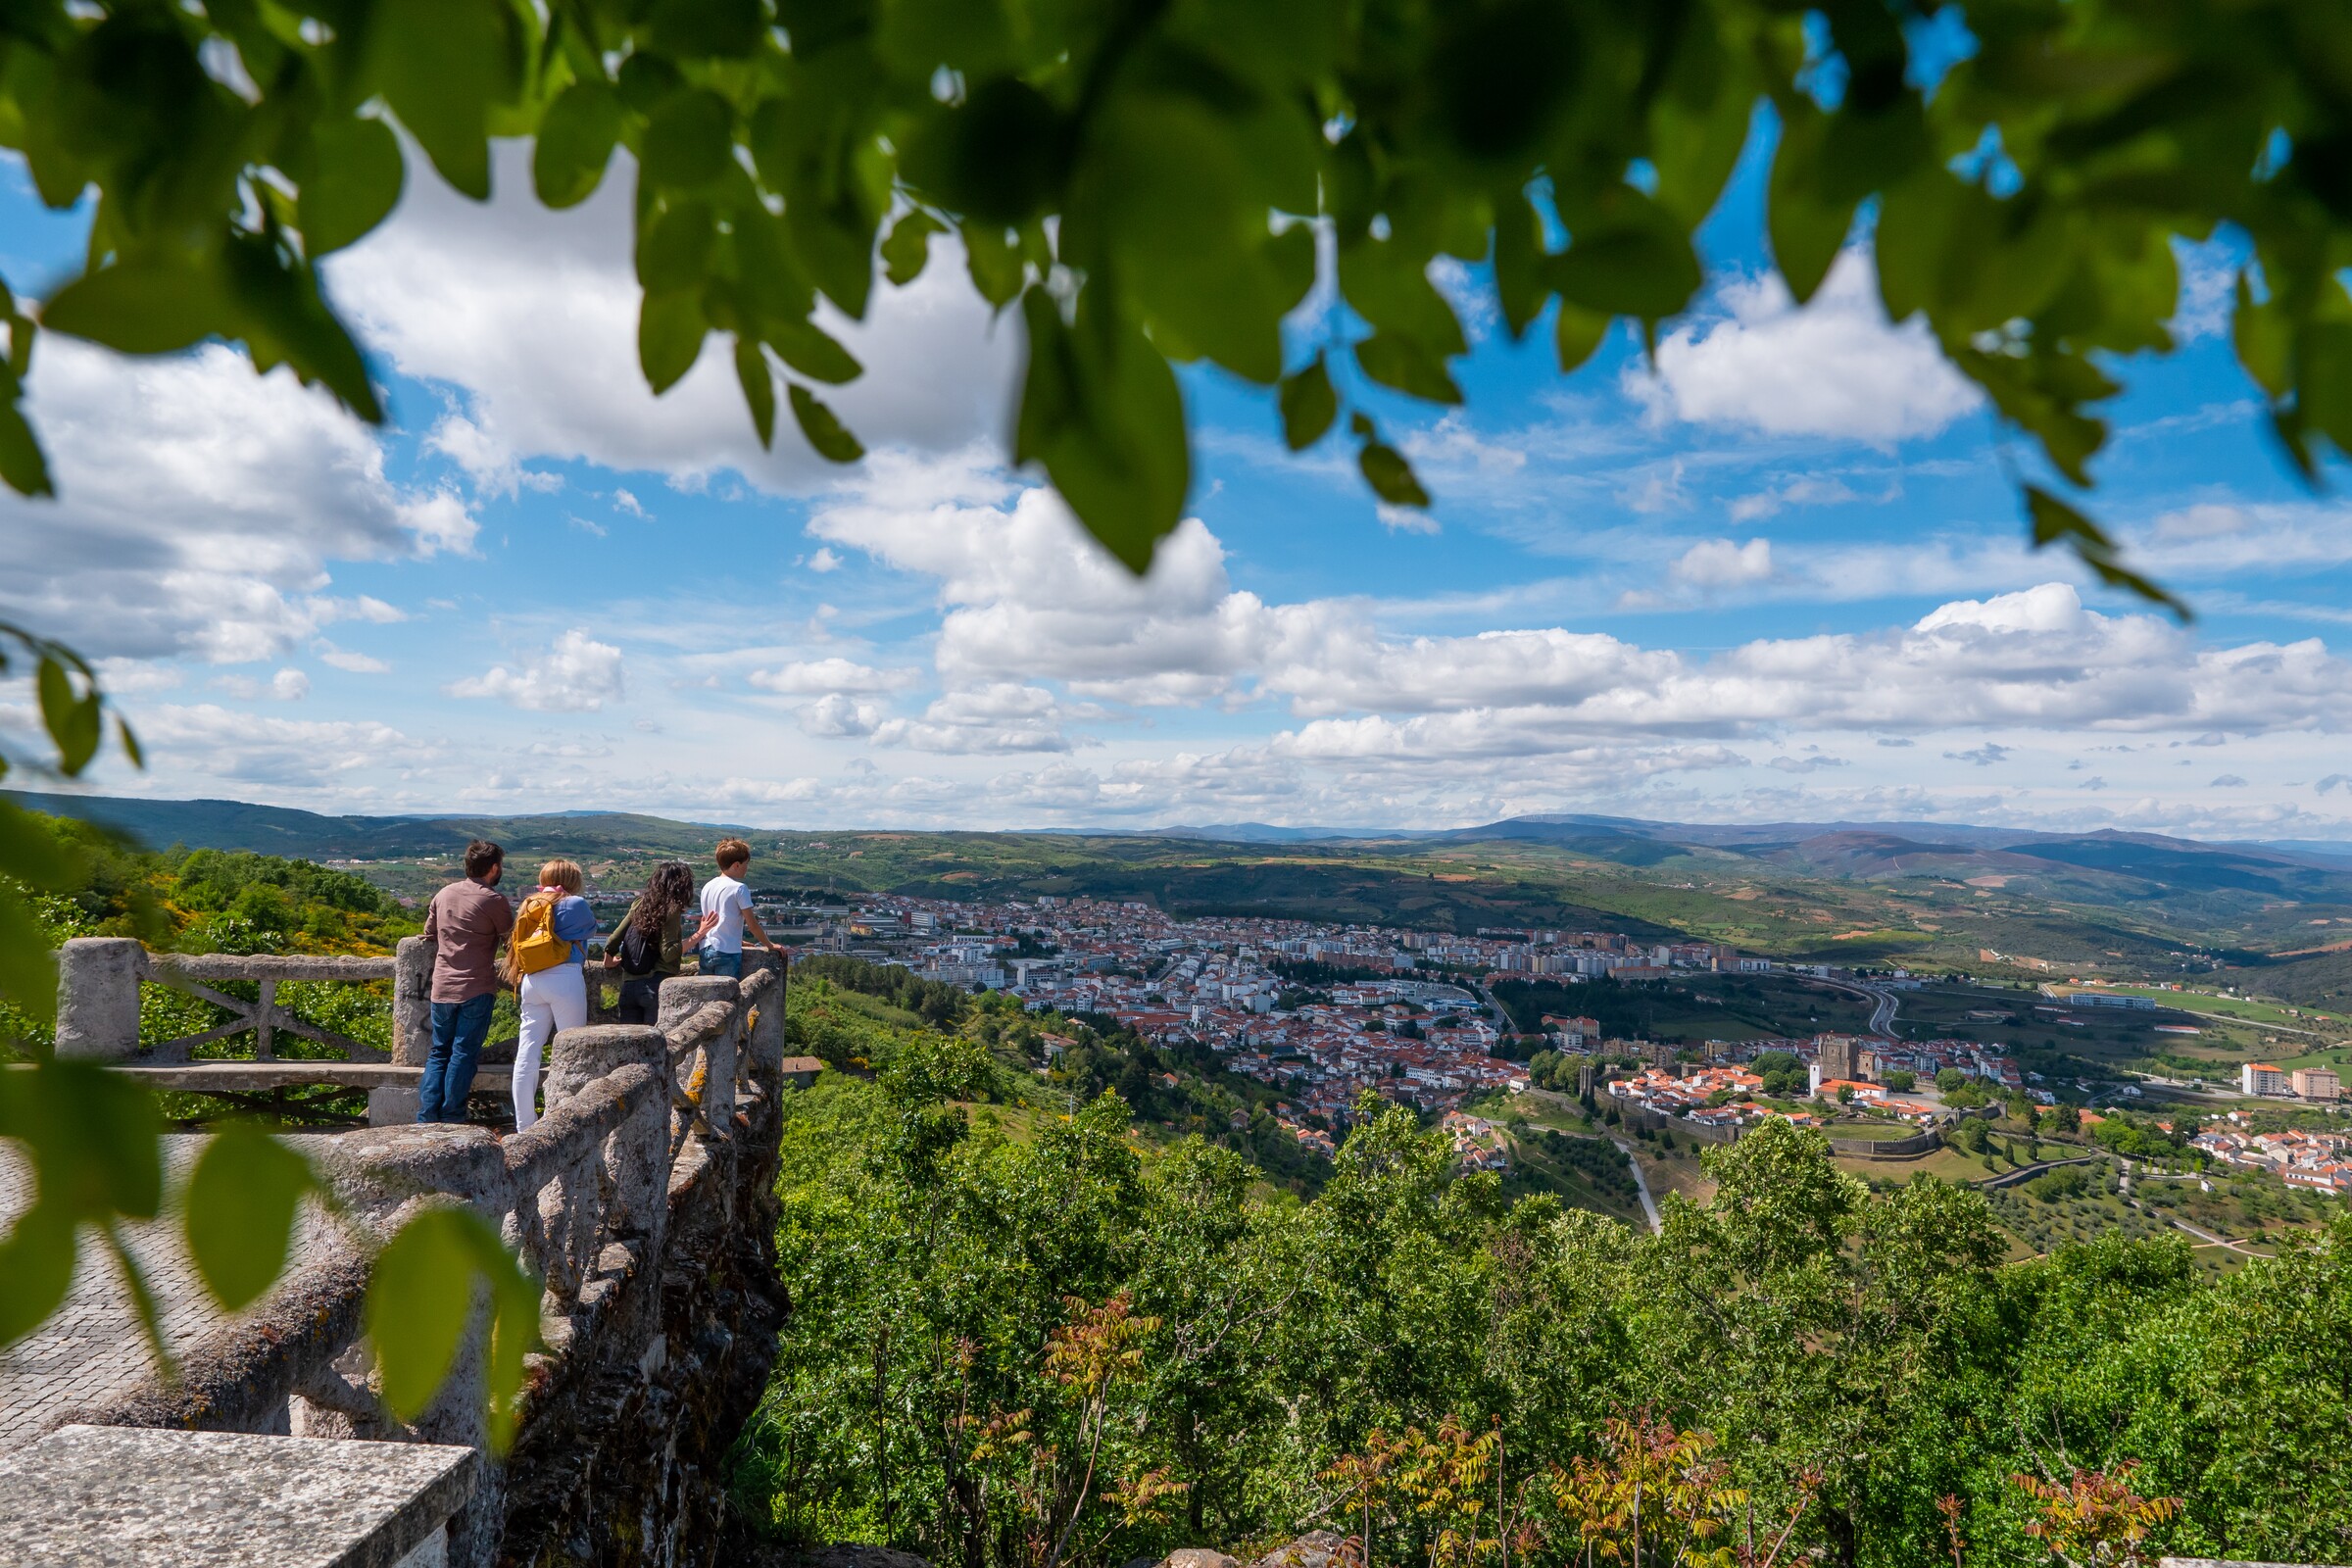 Alojamento turístico em Bragança atinge níveis recorde no 2.º trimestre de 2022